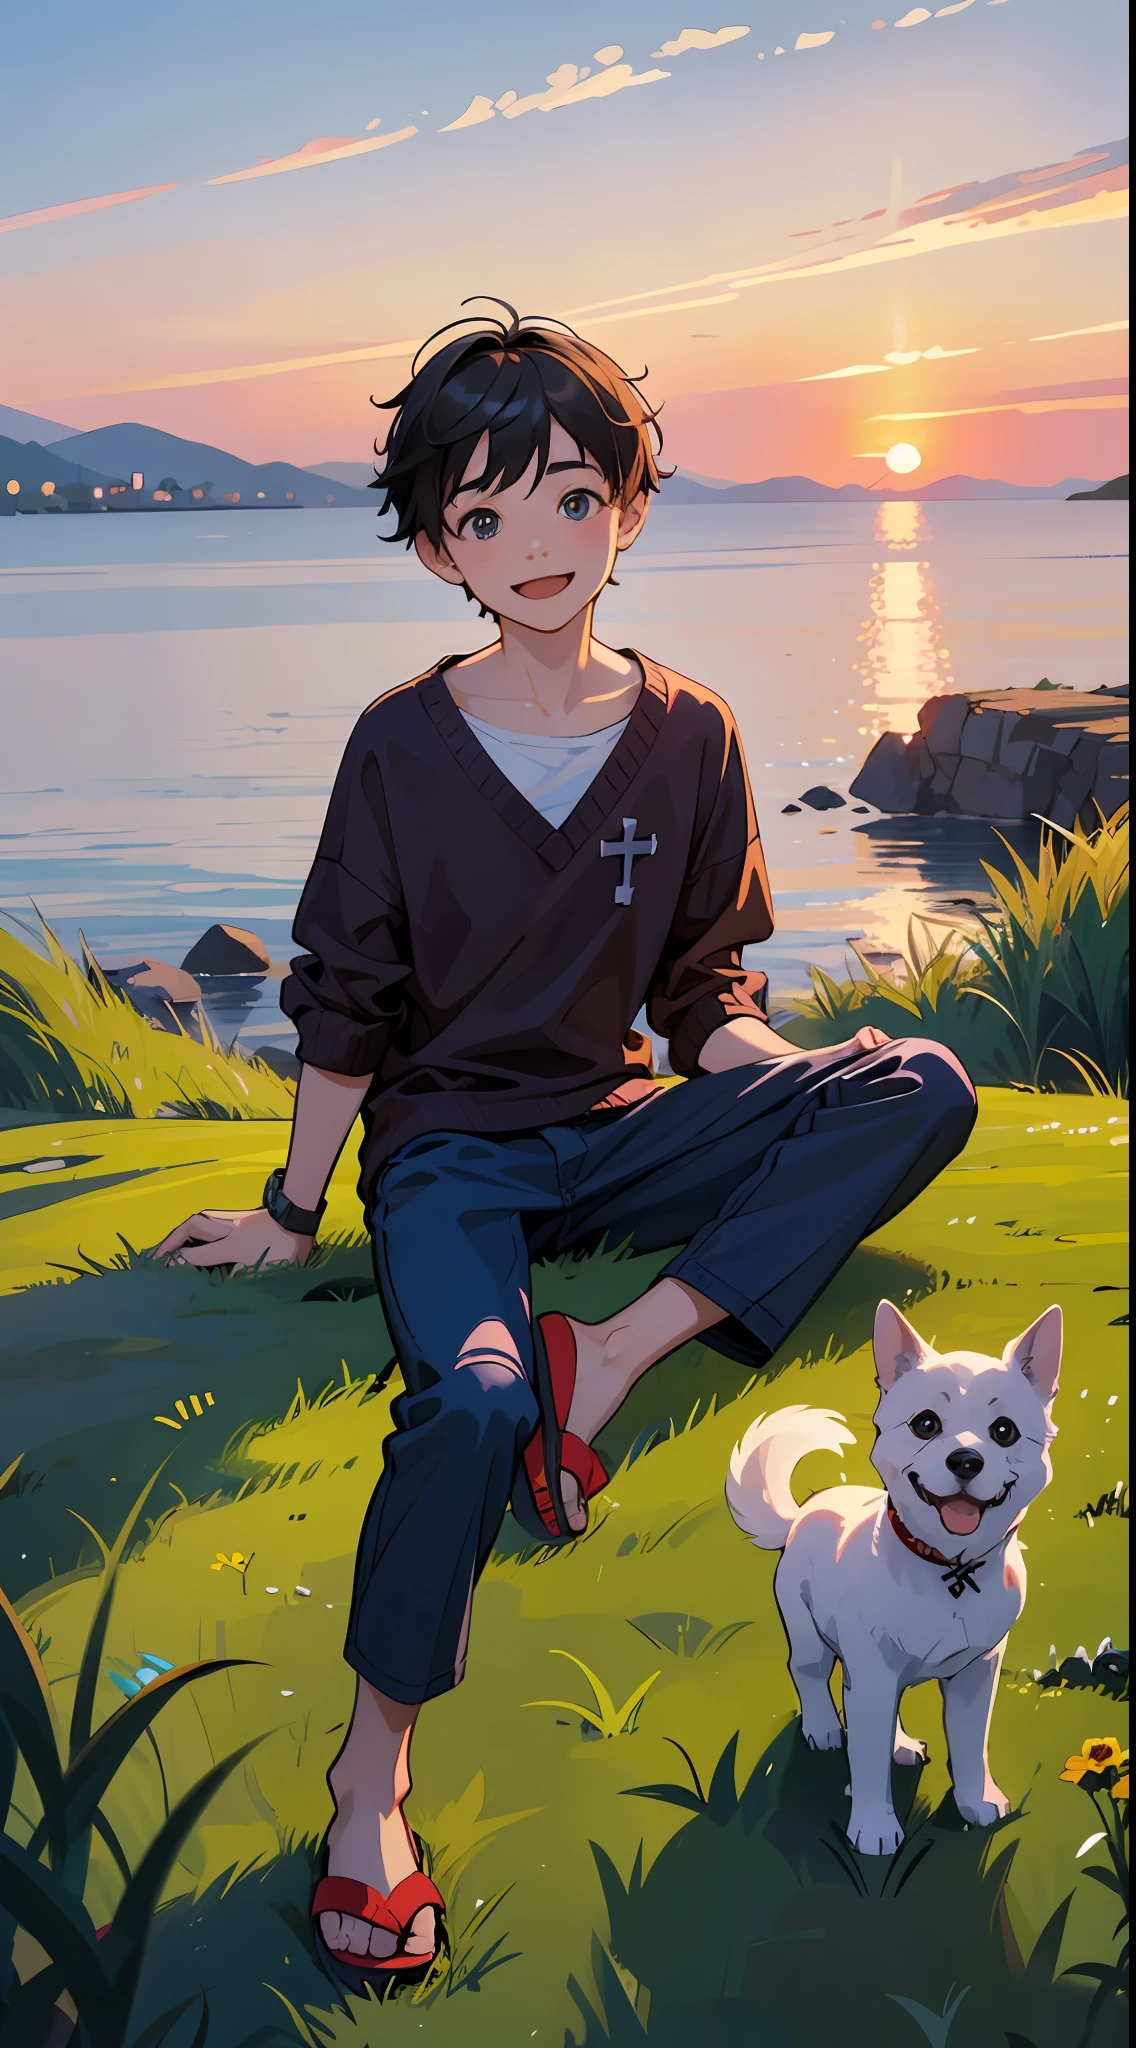 一个快乐的小男孩，穿着休闲服装，穿拖鞋，坐在草地上，背景是跨海大桥，旁边有一只可爱的小狗，日落与日落，面对镜头，全身照片，超高清